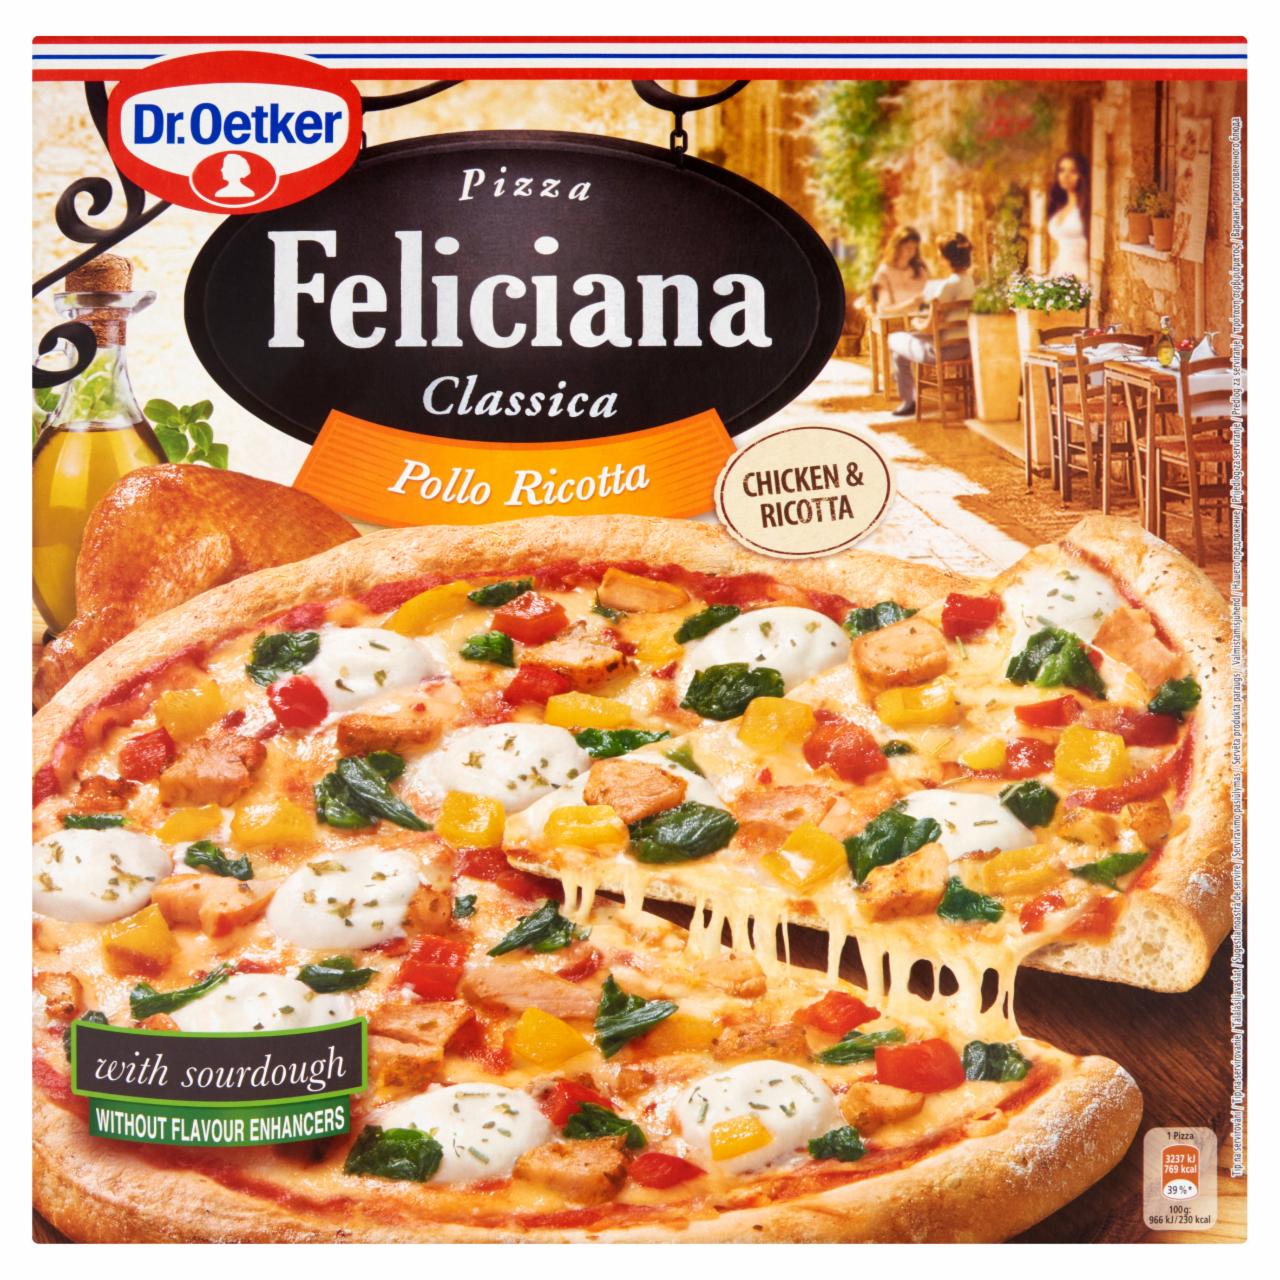 Képek - Dr. Oetker Feliciana gyorsfagyasztott pizza sült csirkecombbal és ricotta sajttal 335 g